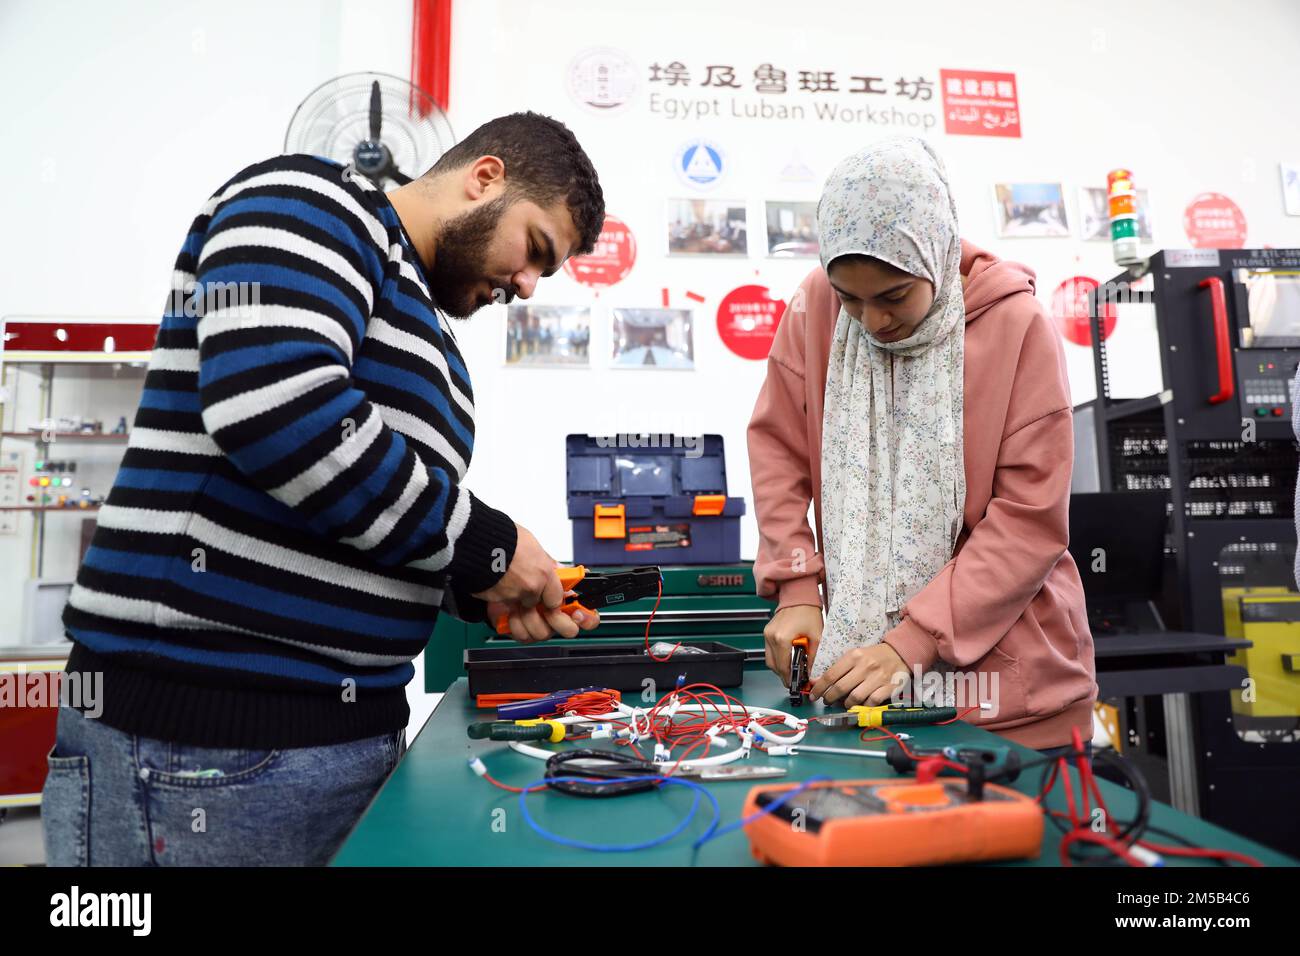 Le Caire, Égypte. 21st décembre 2022. Les stagiaires apprennent la connexion de circuits dans la zone de formation à l'installation de la commande numérique par ordinateur (CNC) de l'atelier Luban à l'Université Ain Shams au Caire (Egypte), le 21 décembre 2022. Lors d'un atelier à l'Université Ain Shams au Caire, un certain nombre d'étudiants en ingénierie ont été formés à l'utilisation de G-code, un langage de programmation, pour créer un contrôle automatisé d'une machine. L'atelier, également connu sous le nom de Centre Luban Egypt pour la formation professionnelle, est l'un des nombreux exemples de la coopération en matière d'éducation entre la Chine et l'Égypte. Credit: Ahmed Gomaa/Xinhua/Alamy Live News Banque D'Images